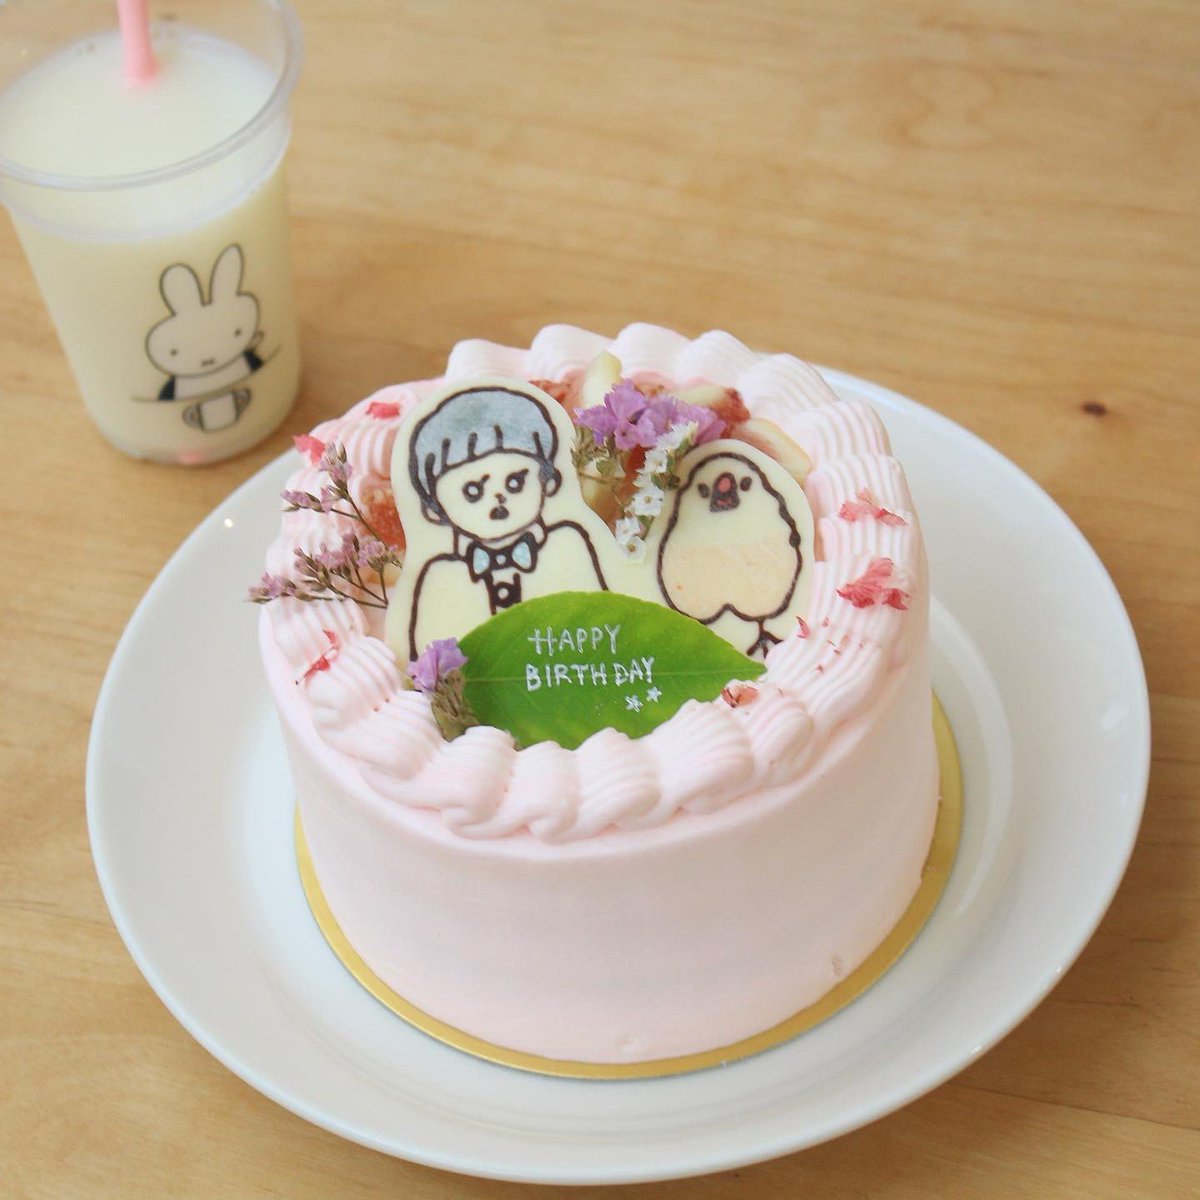 「子の6歳の誕生日パーティーをしました。今年はけーきちゃんのケーキを作ってもらいま」|emiのイラスト